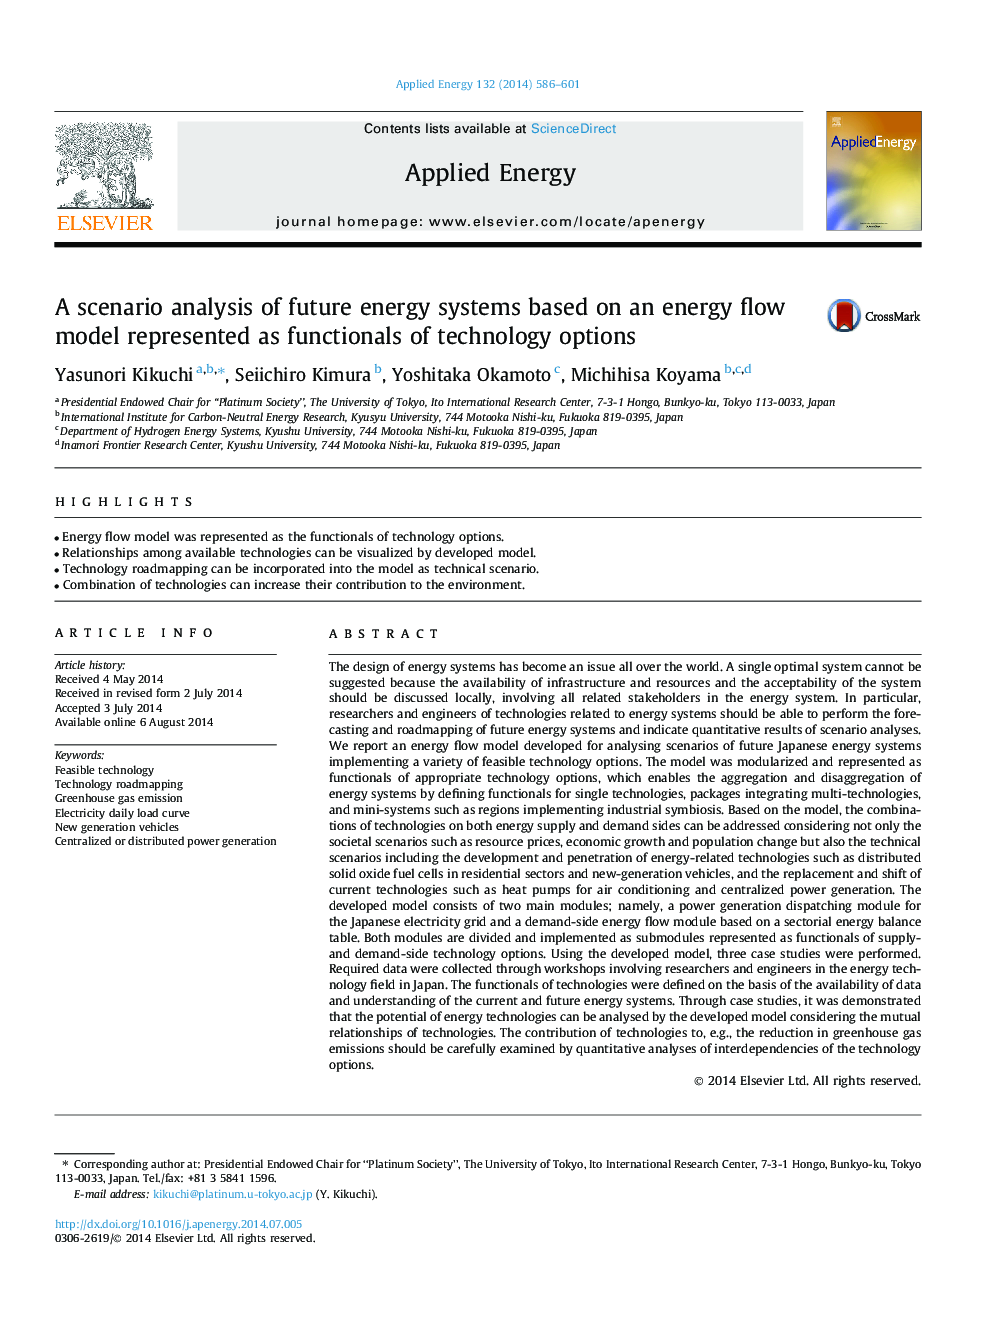 تجزیه و تحلیل سناریو سیستم های انرژی آینده بر اساس یک مدل جریان انرژی نشان داده شده به عنوان کارکردهای گزینه های تکنولوژی 